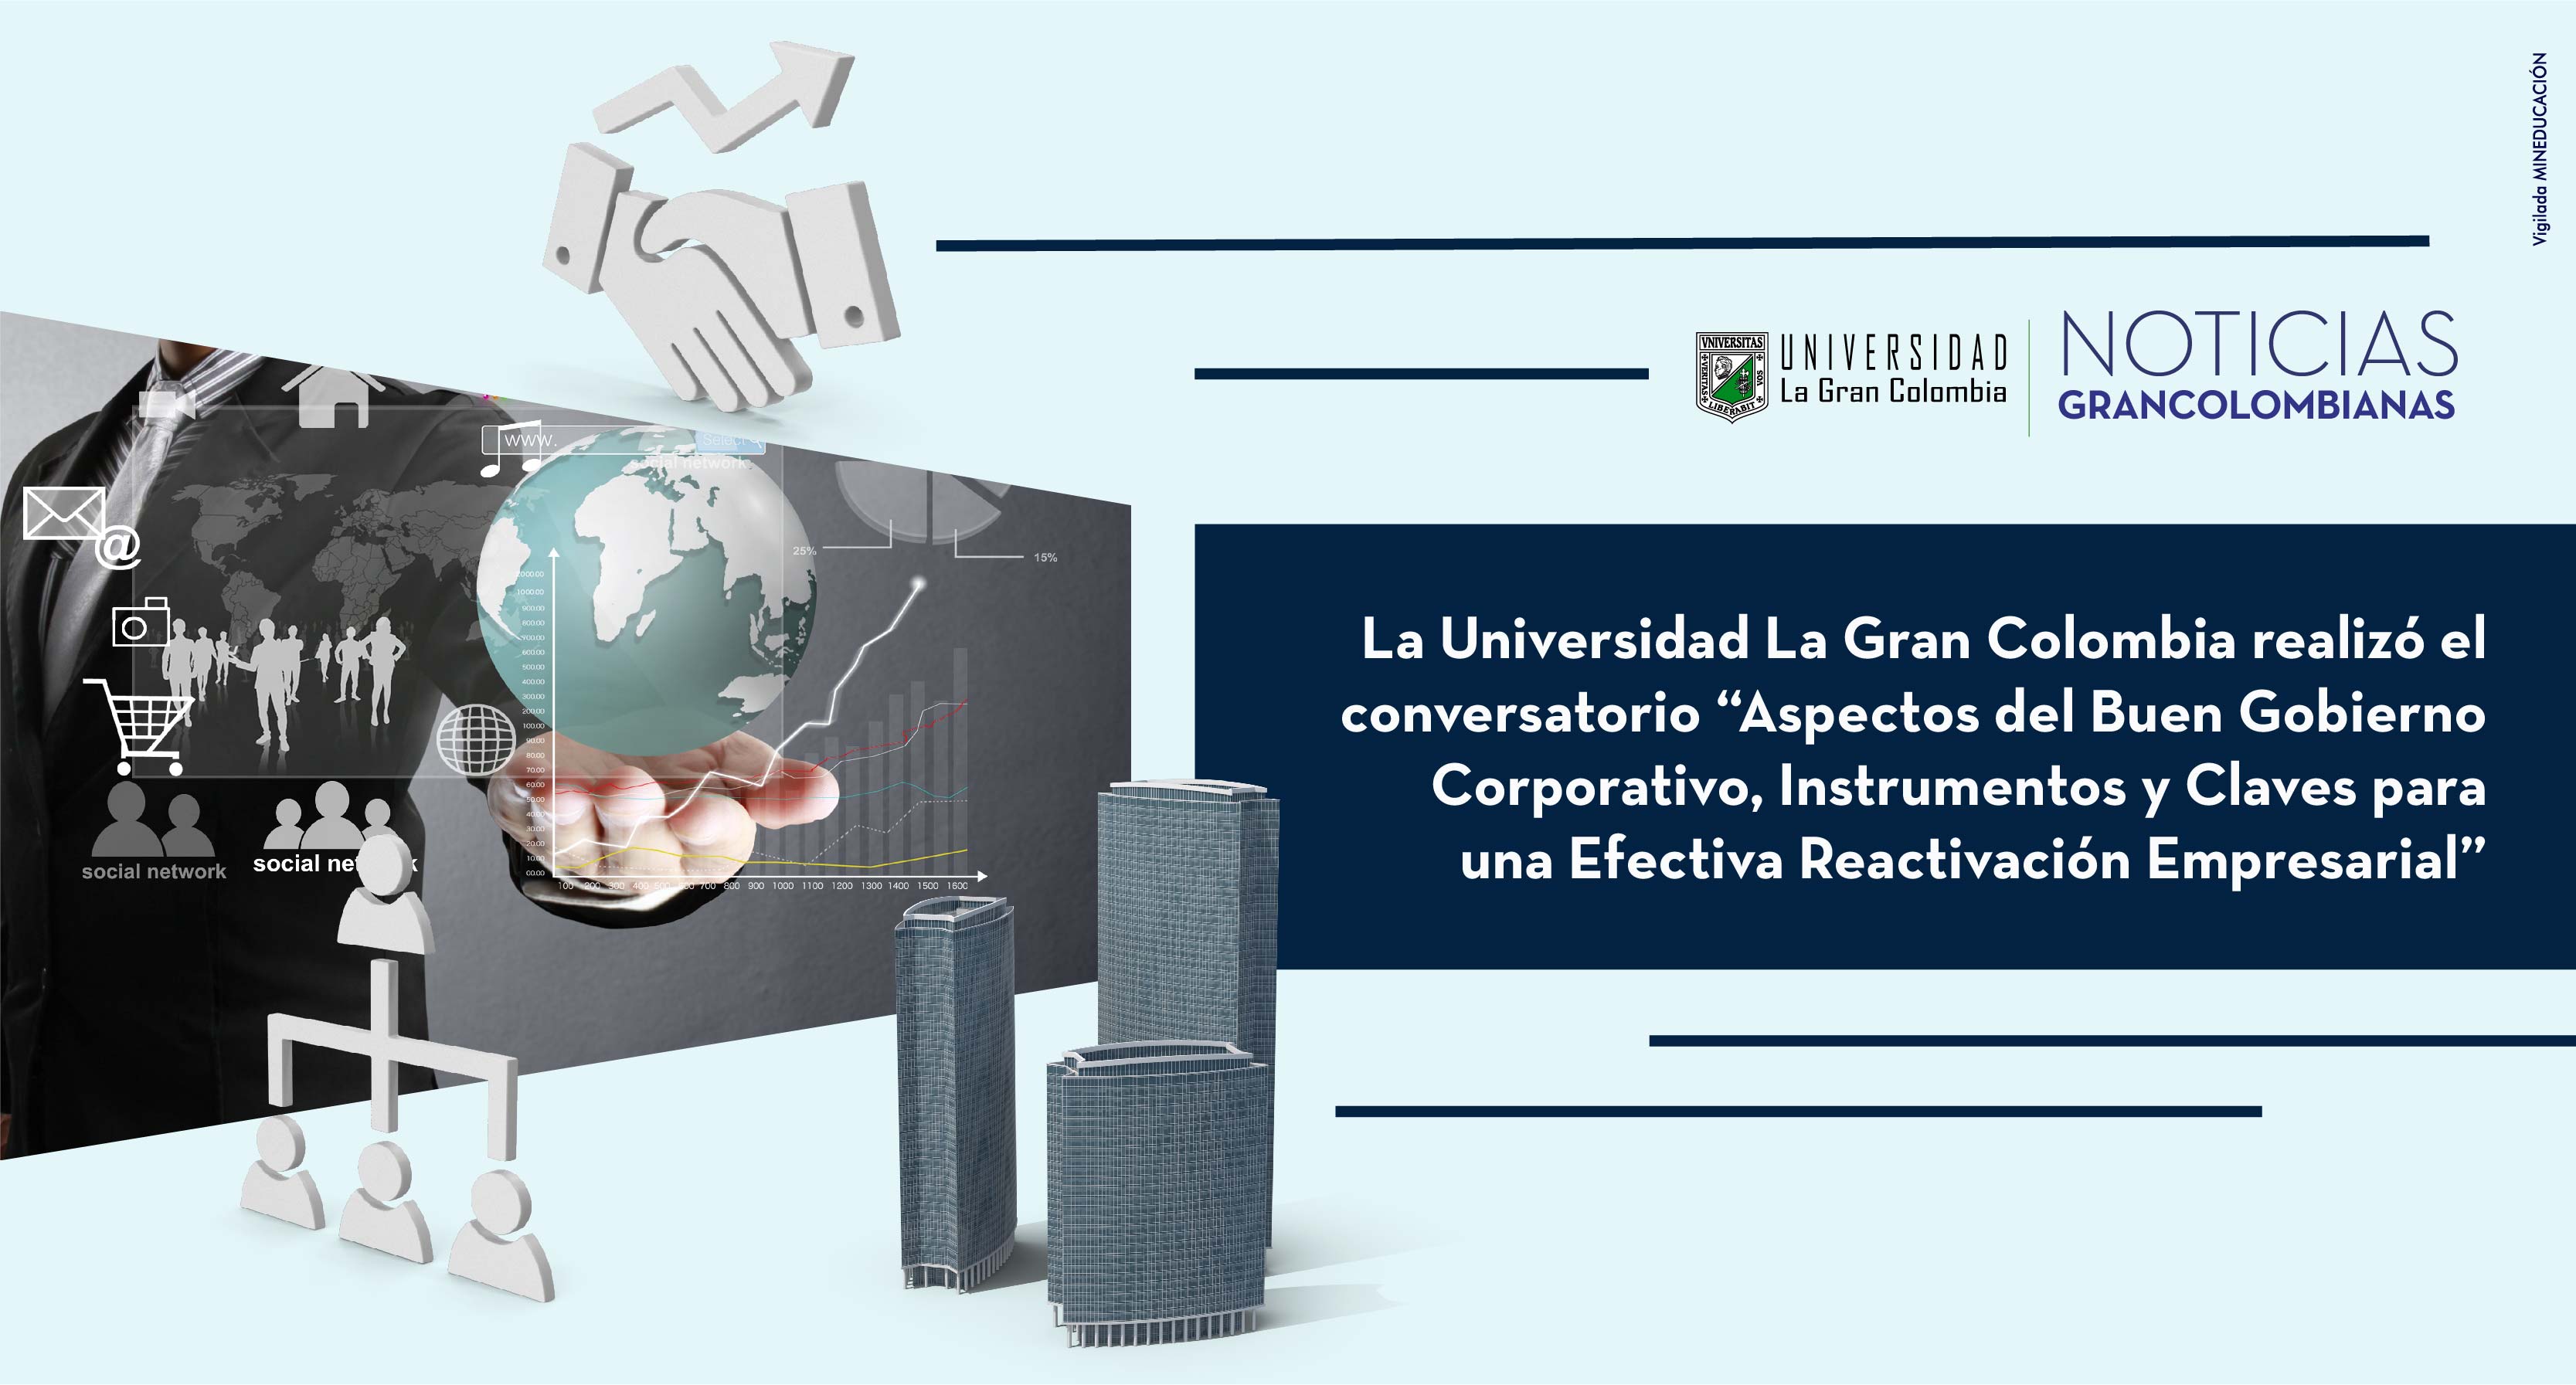 La Universidad La Gran Colombia realizó el conversatorio “Aspectos del Buen Gobierno Corporativo, Instrumentos y Claves para una Efectiva Reactivación Empresarial”